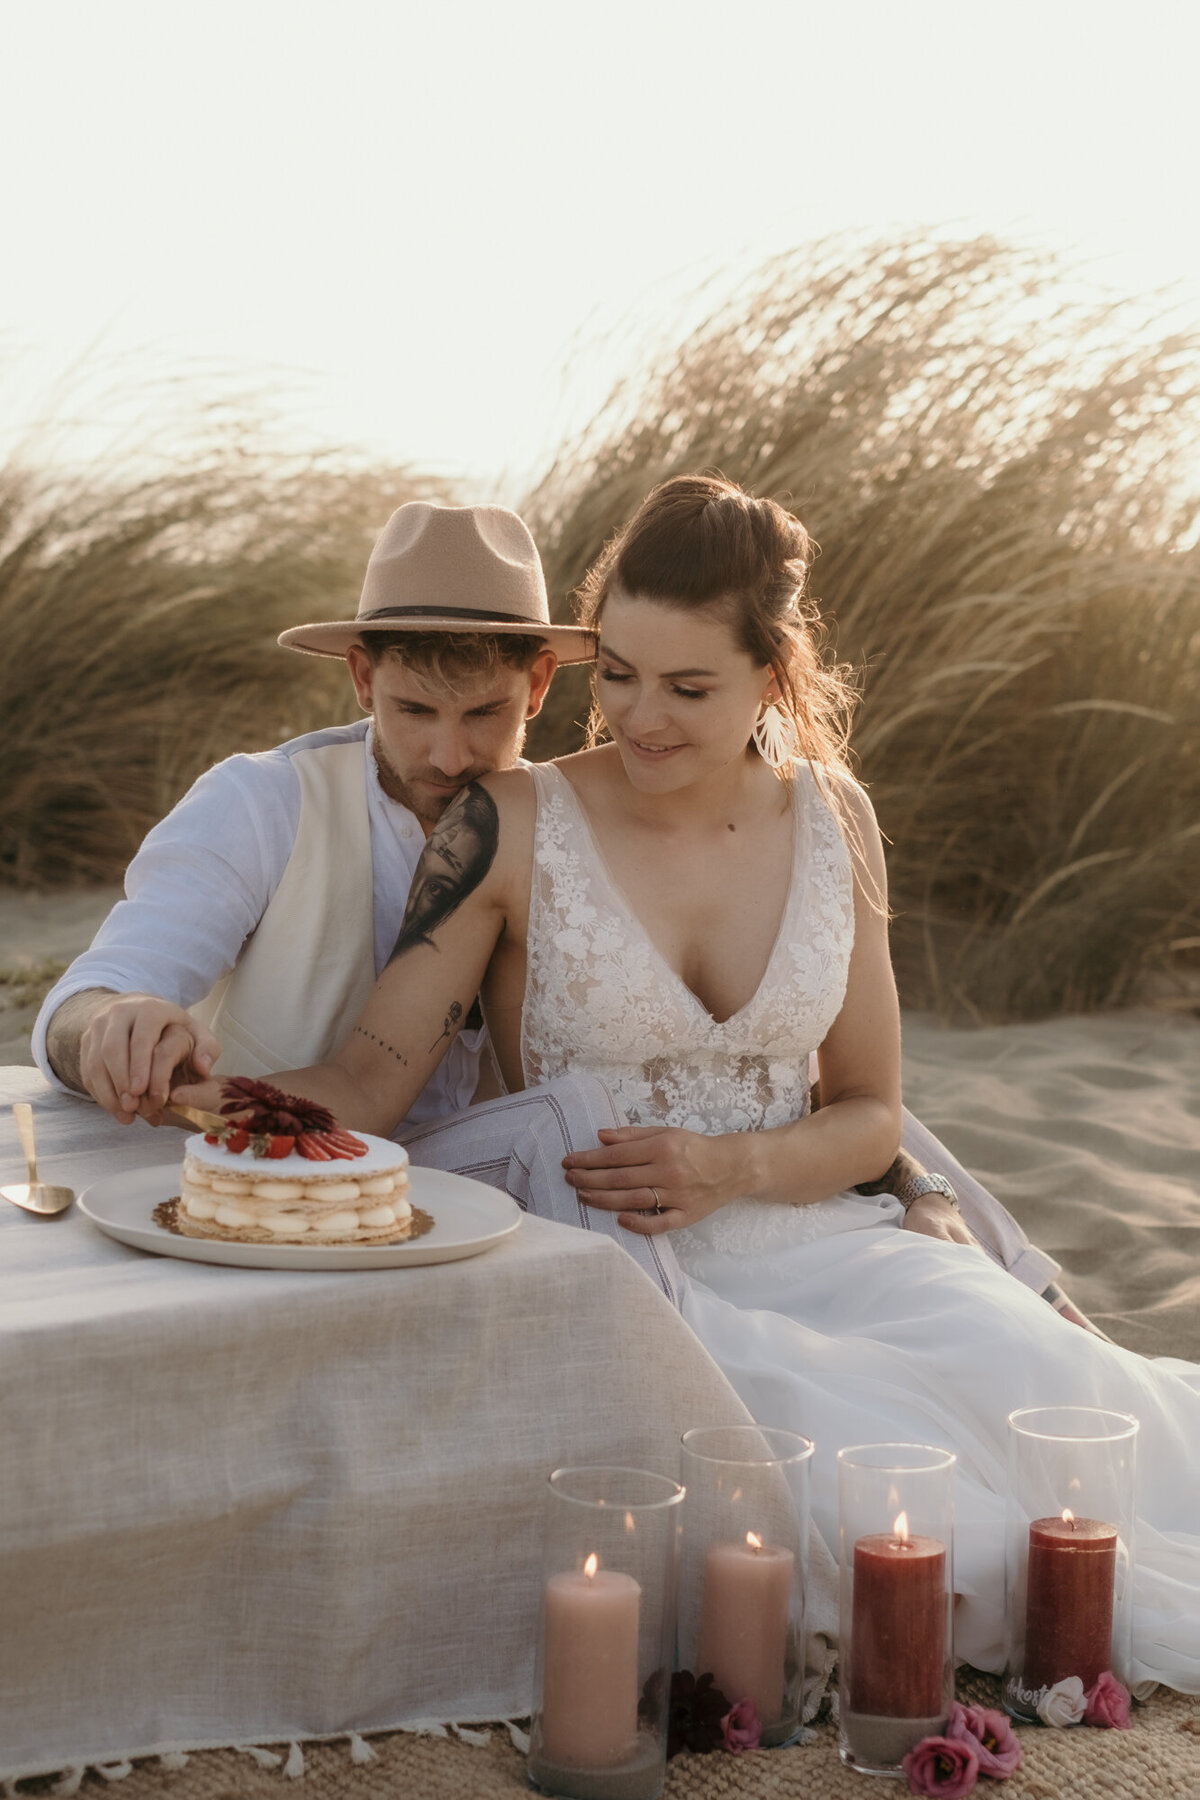 Während des Kuchenanschnitts sitzt das Hochzeitspaar im Sand neben dem niedrigen Tisch hintereinander.